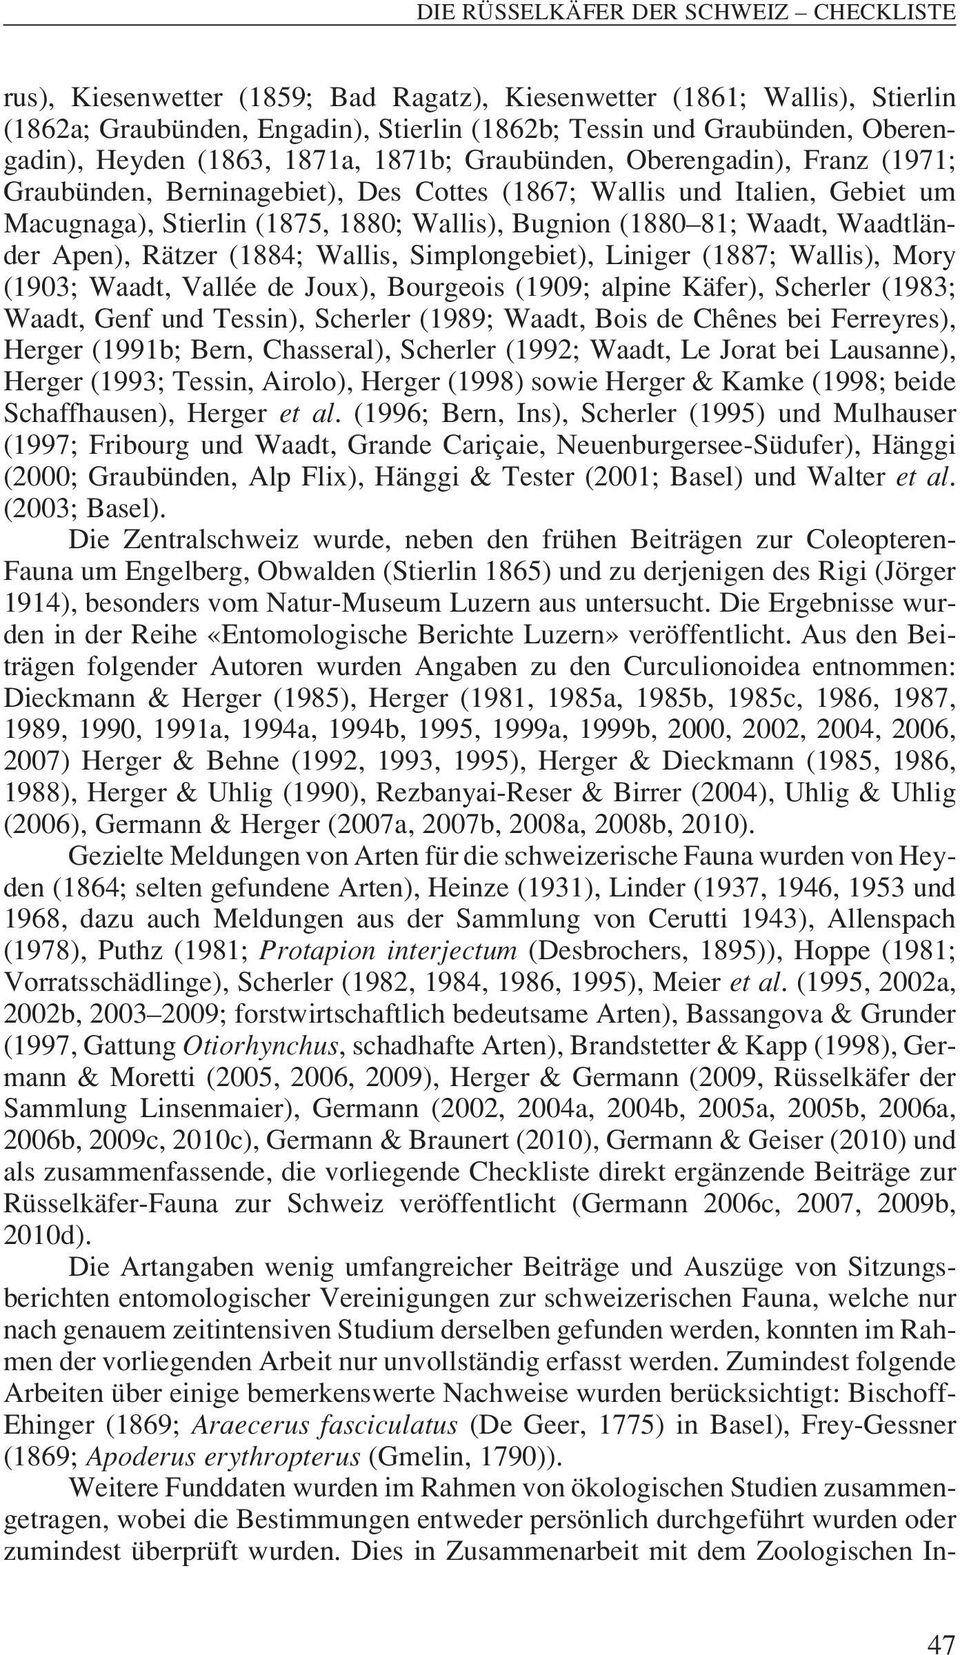 Bugnion (1880 81; Waadt, Waadt län - der Apen), Rätzer (1884; Wallis, Simplongebiet), Liniger (1887; Wallis), Mory (1903; Waadt, Vallée de Joux), Bourgeois (1909; alpine Käfer), Scherler (1983;